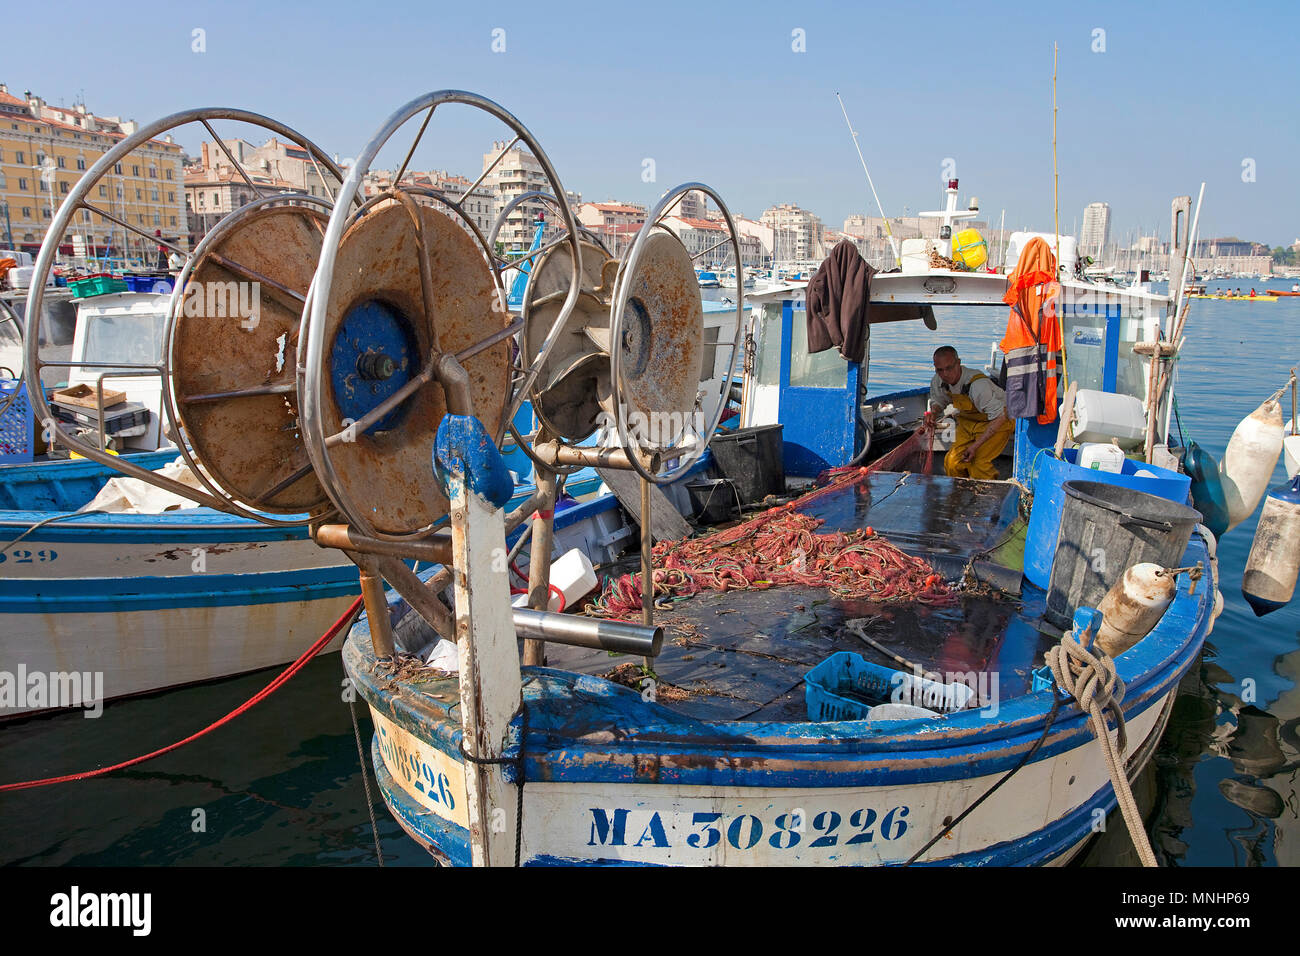 Fisherman at harbour Vieux Port, Marseille, Bouches-du-Rhone, Provence-Alpes-Côte d’Azur, South France, France, Europe Stock Photo